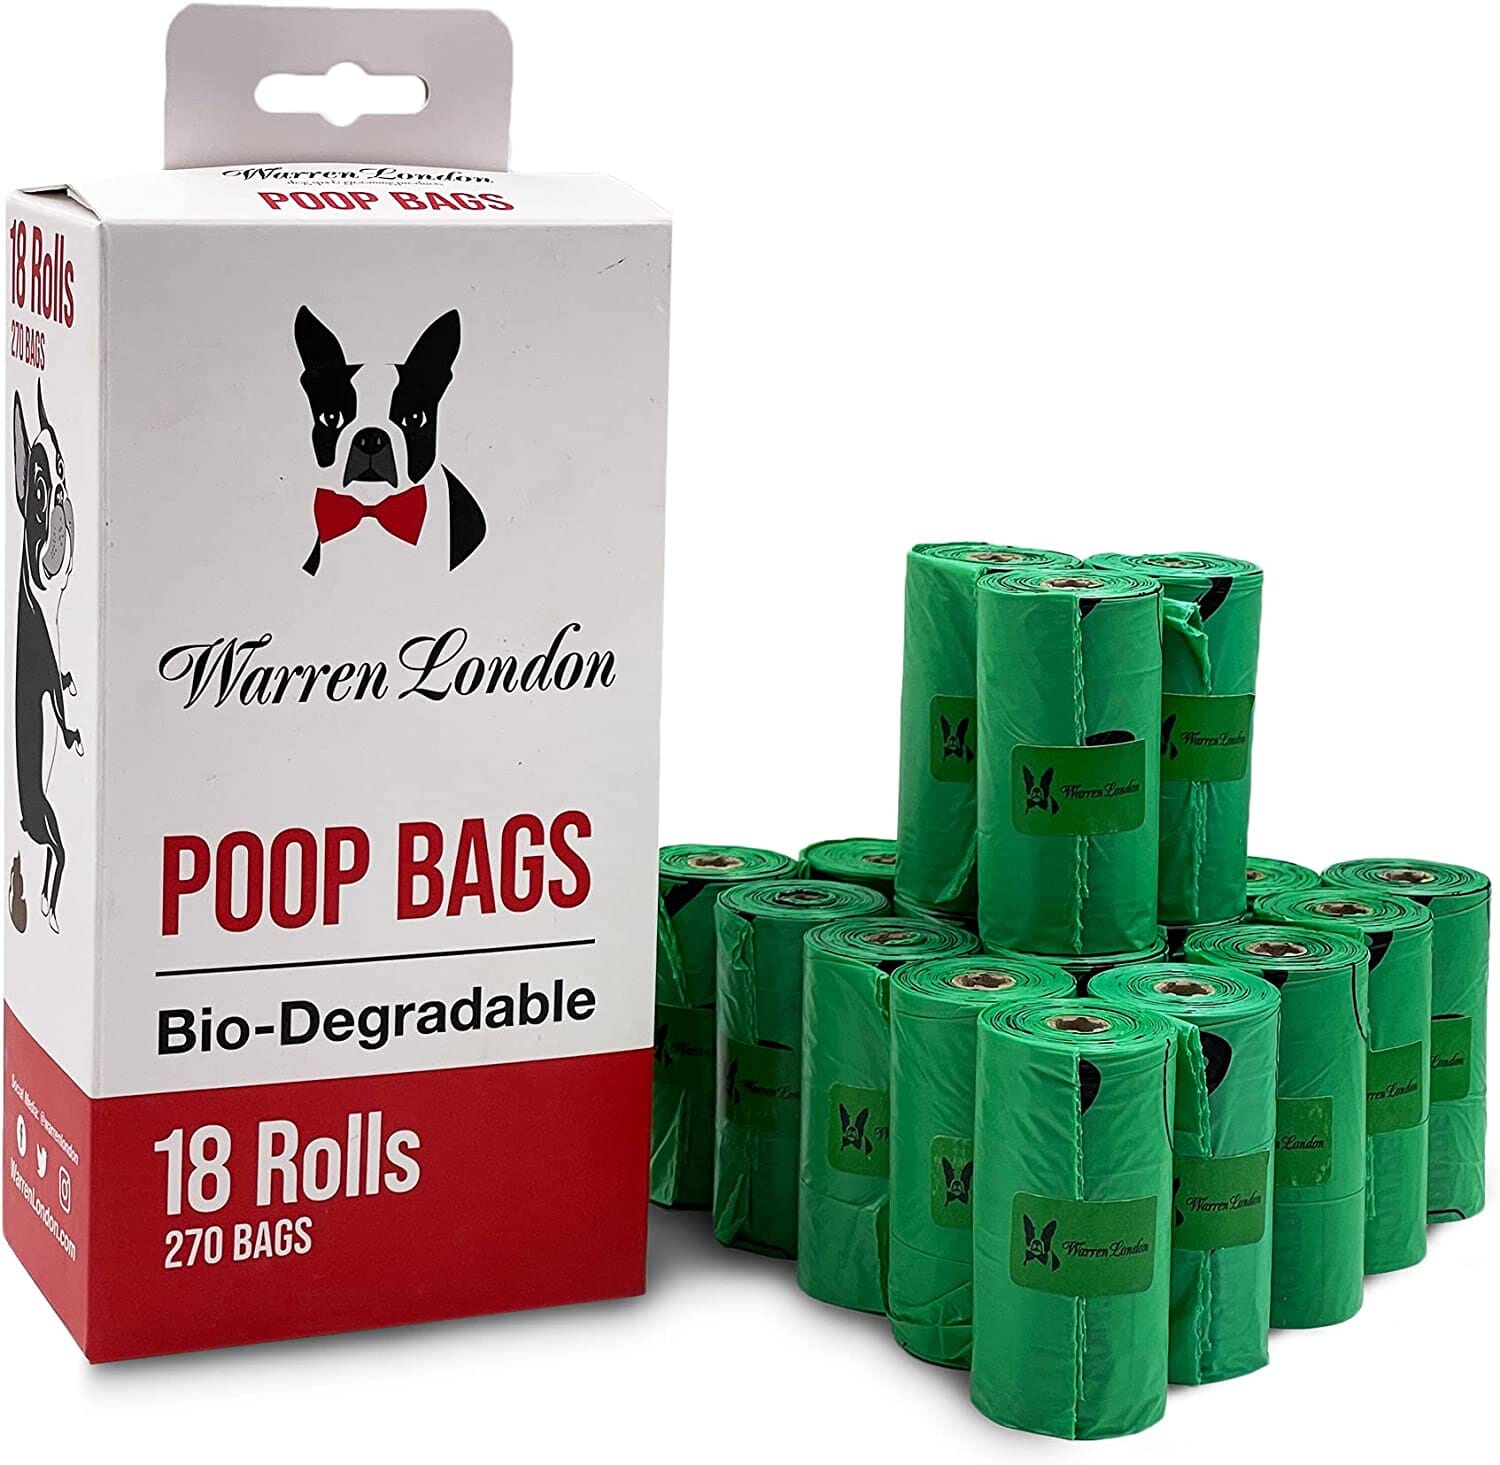 Poop Bags For Dogs Pet Supplies Warren London 18 Rolls - 270 Bags 